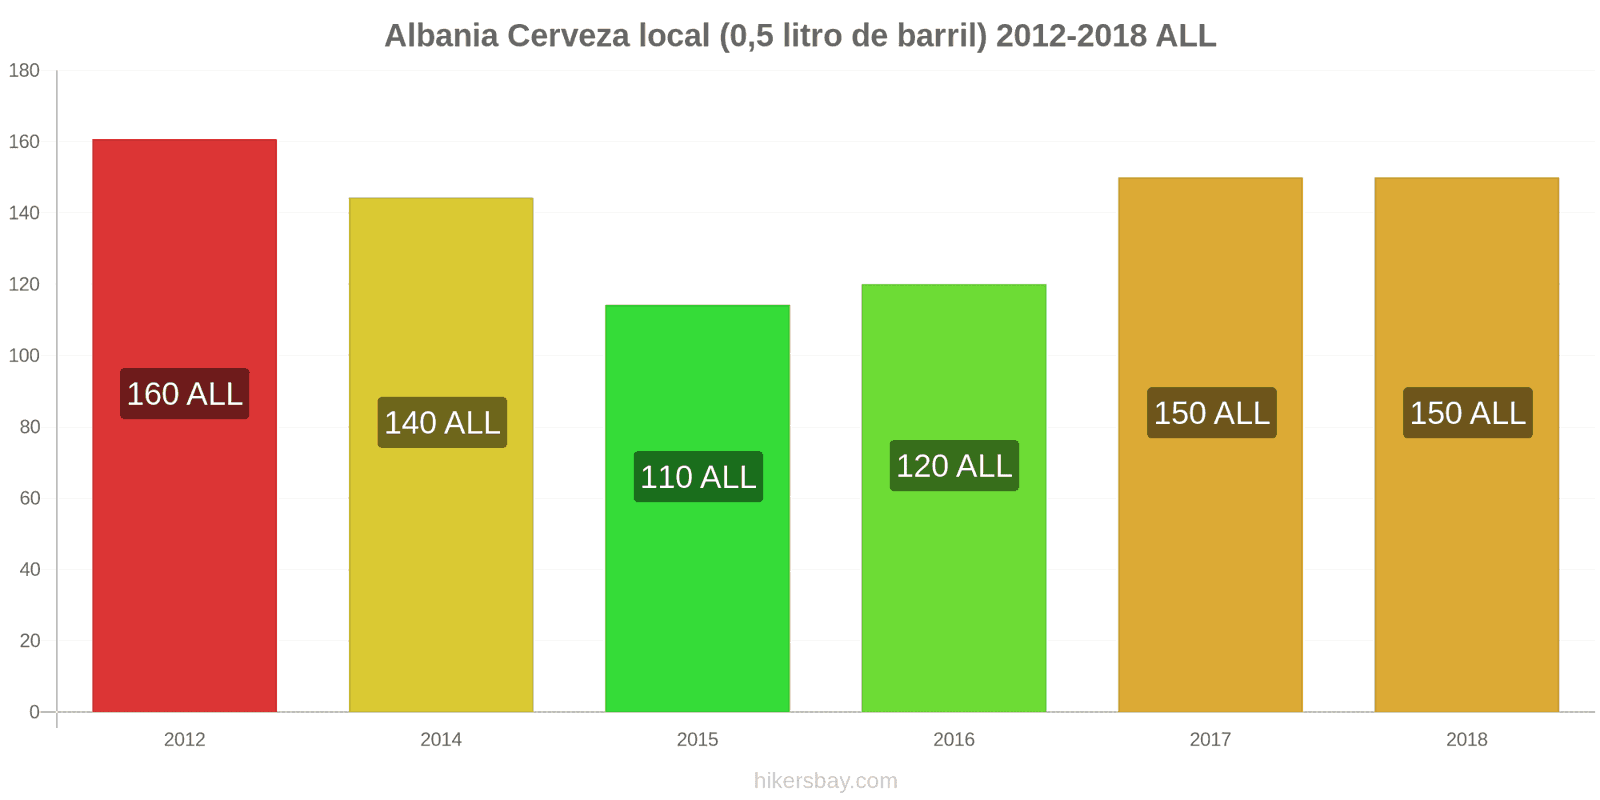 Albania cambios de precios Cerveza de barril (0,5 litros) hikersbay.com